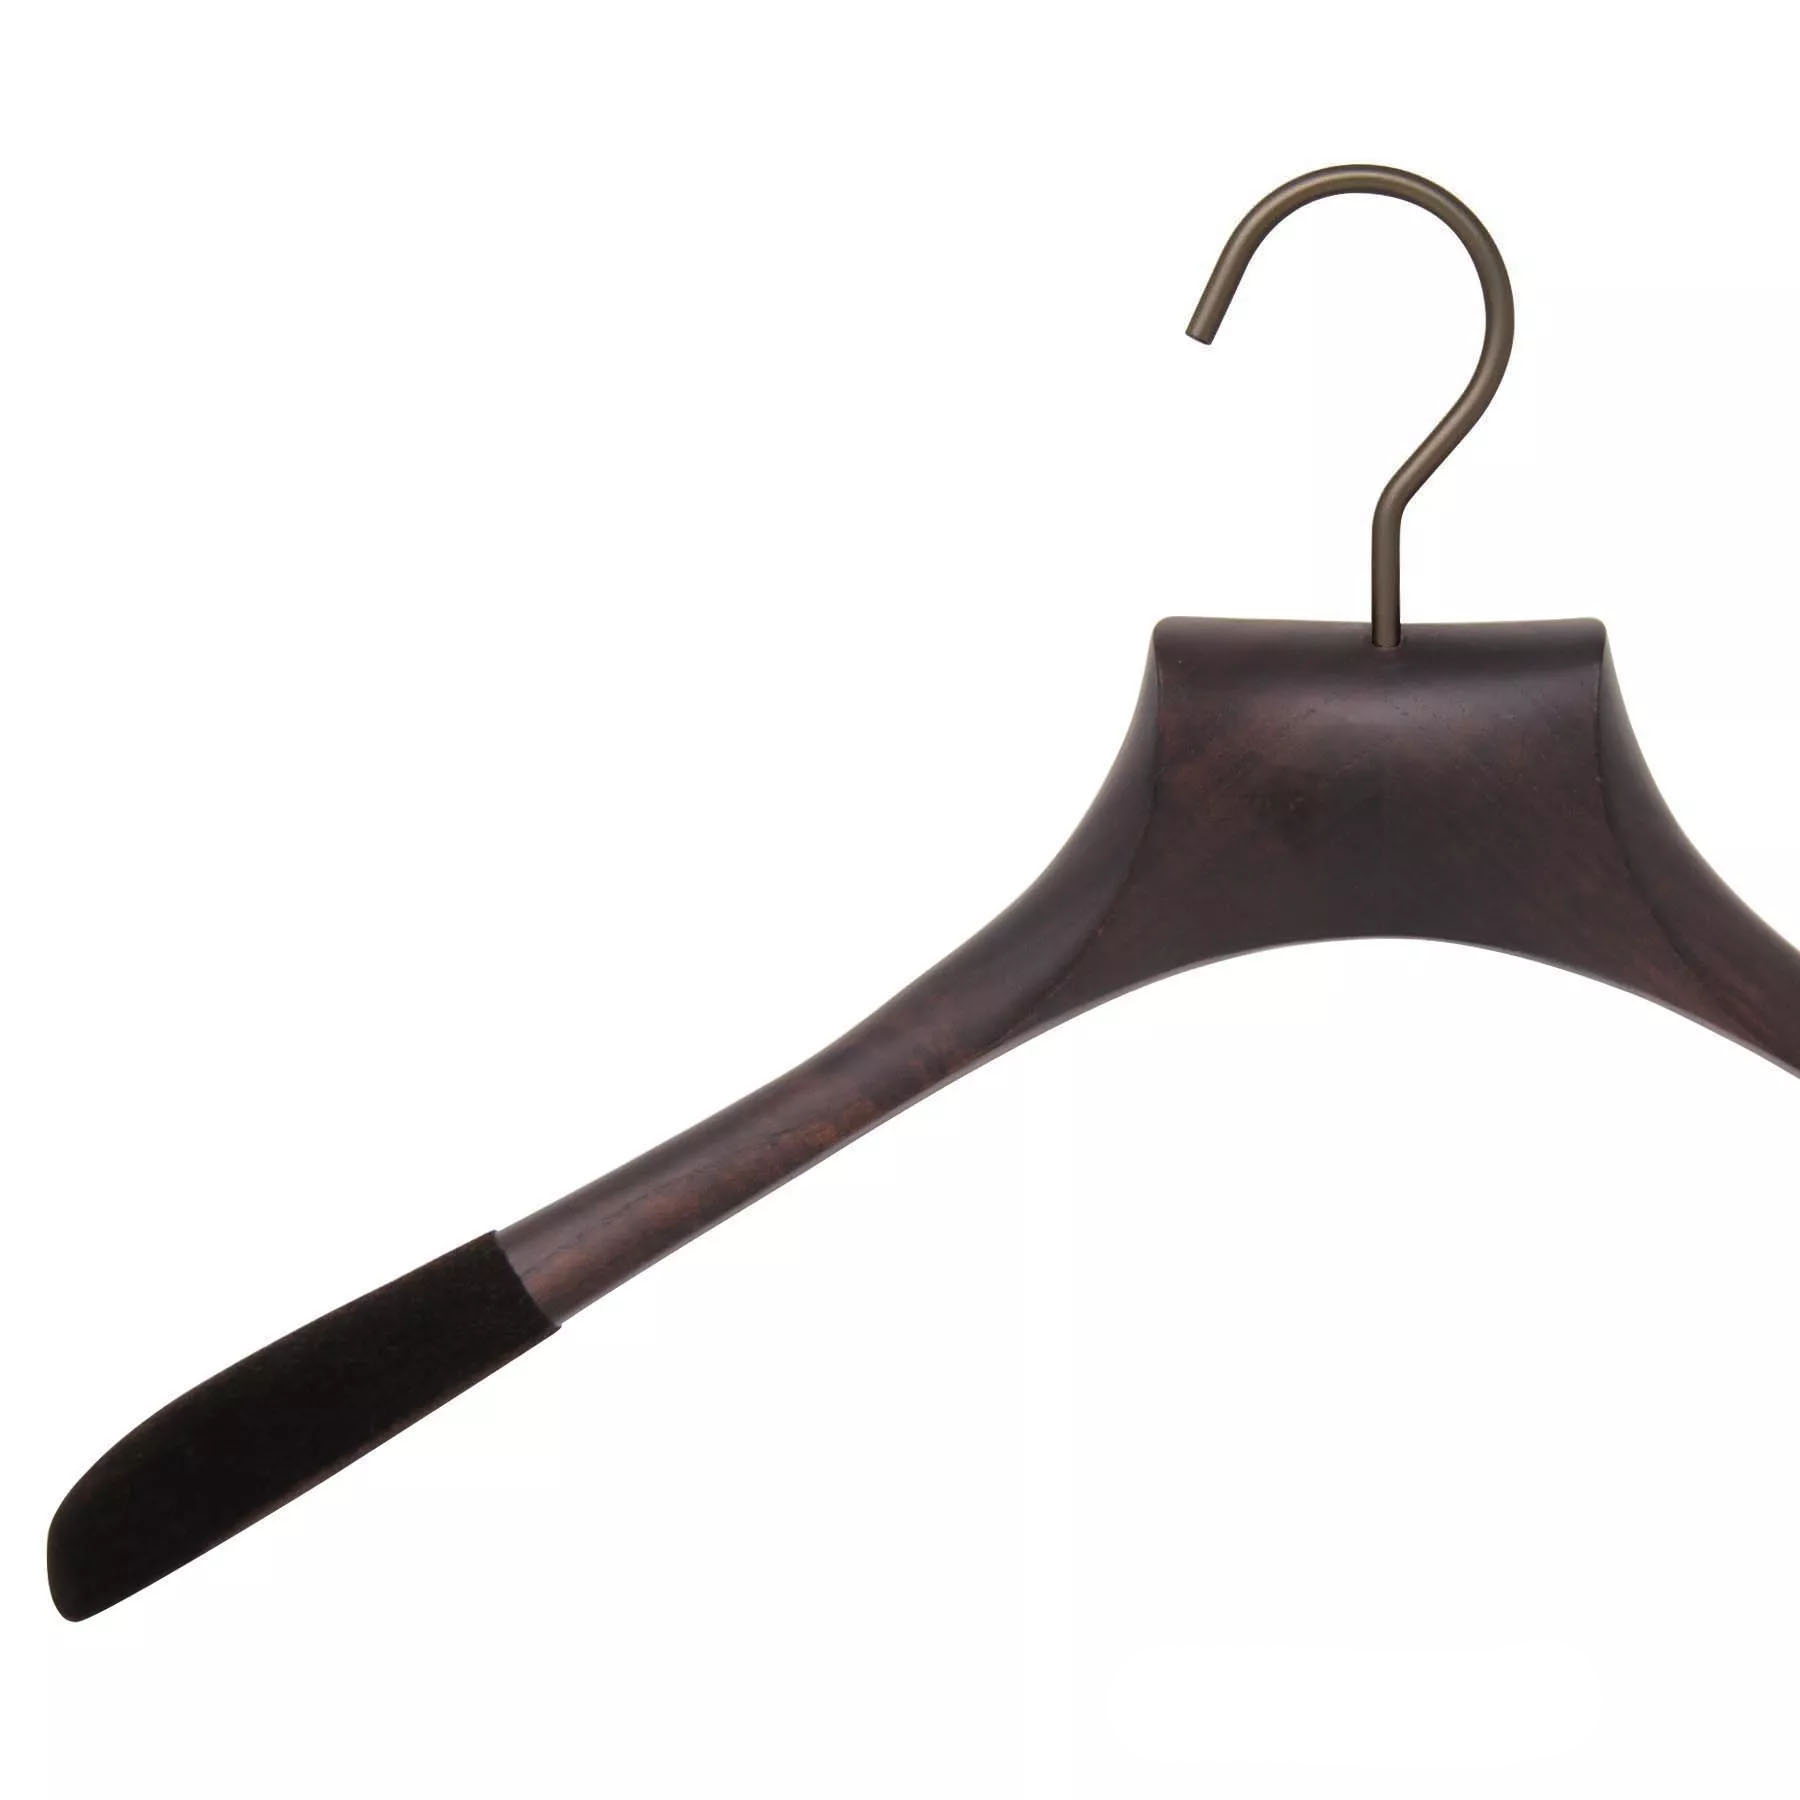 Luxury wooden hanger for shirt